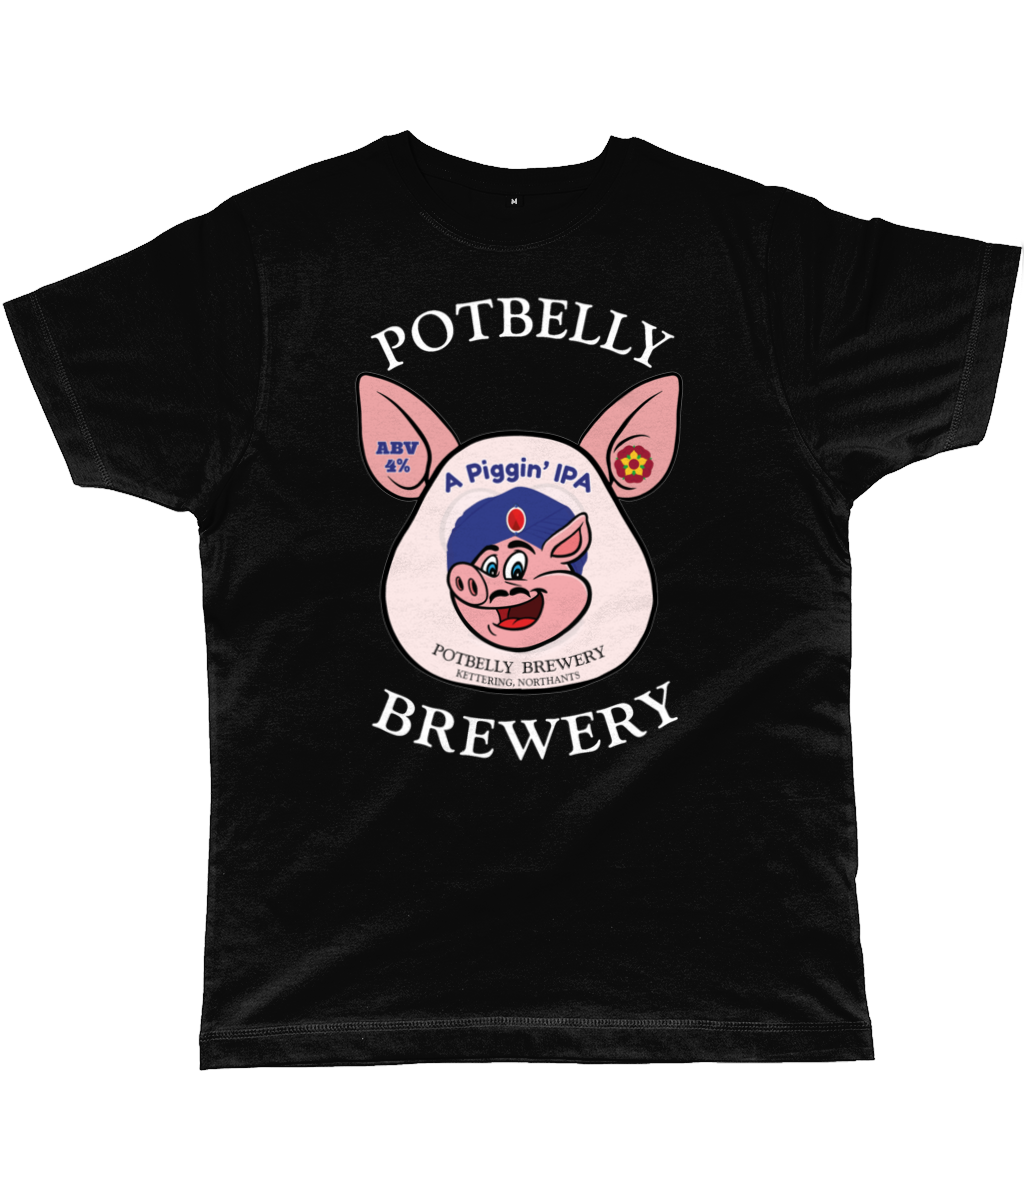 Potbelly Brewery A Piggin IPA Pump Clip Classic Cut Men's T-Shirt